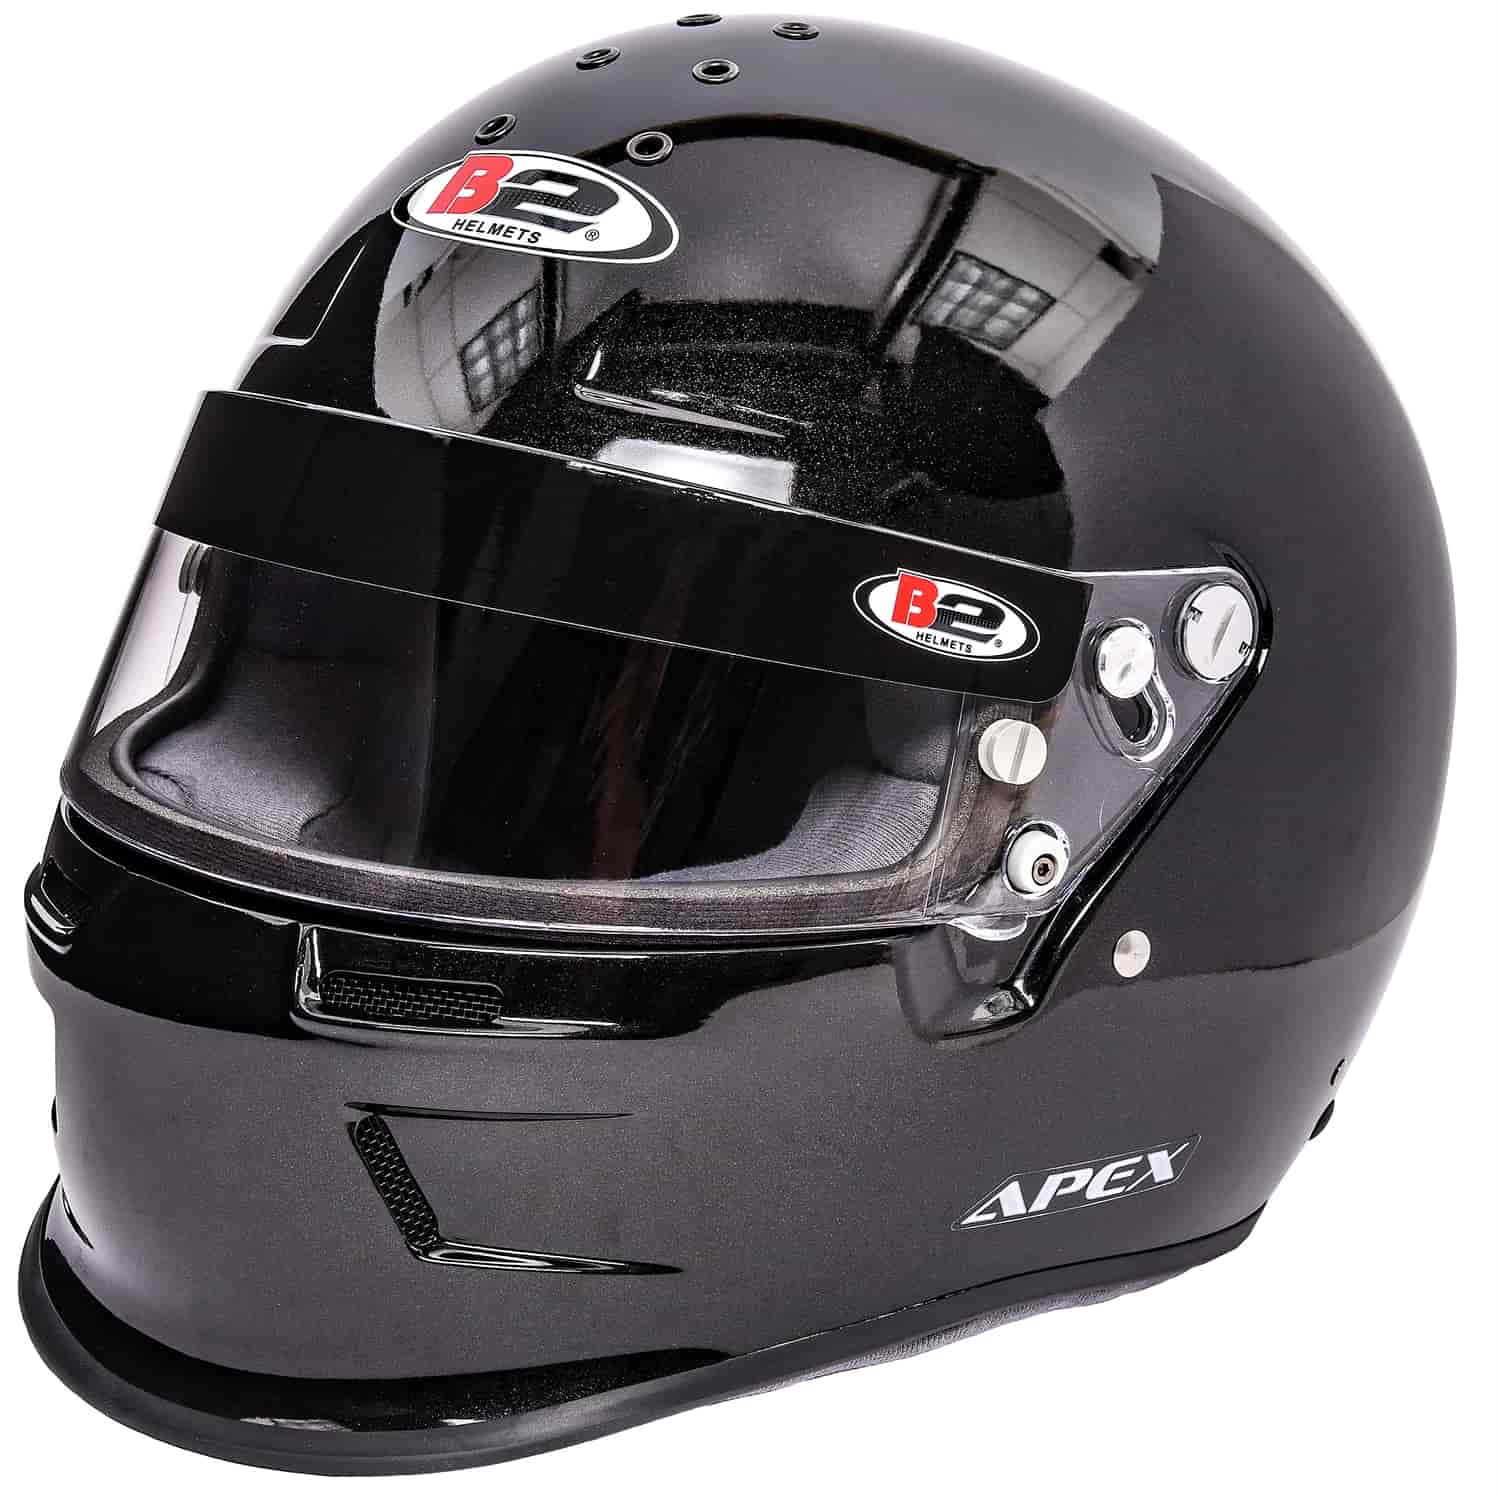 Apex Helmet Black - Medium